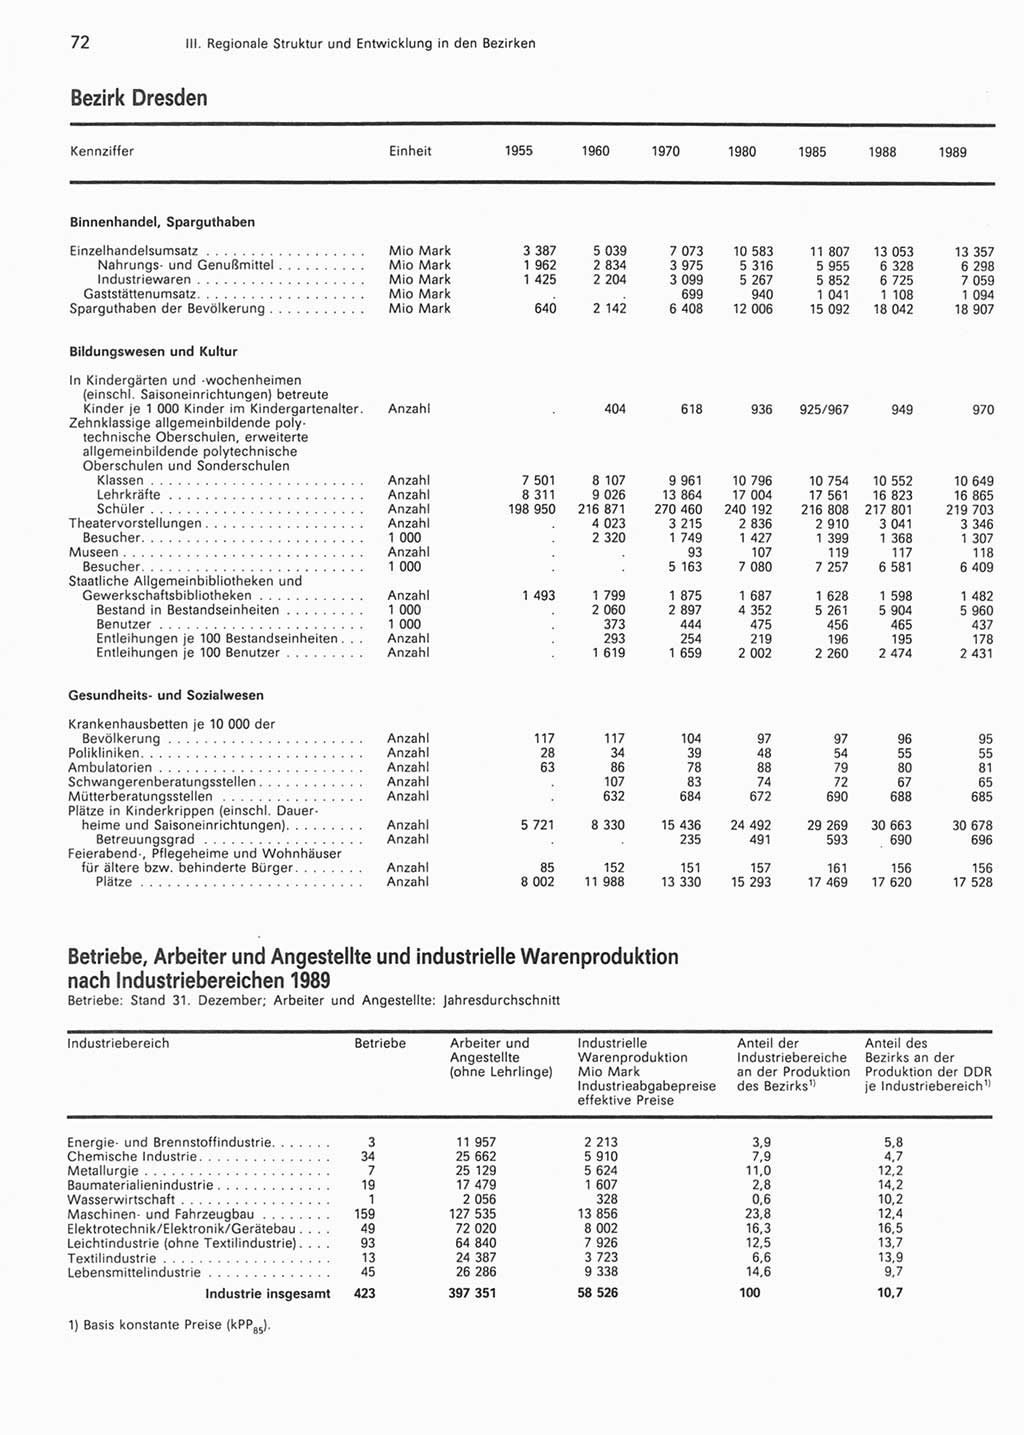 Statistisches Jahrbuch der Deutschen Demokratischen Republik (DDR) 1990, Seite 72 (Stat. Jb. DDR 1990, S. 72)